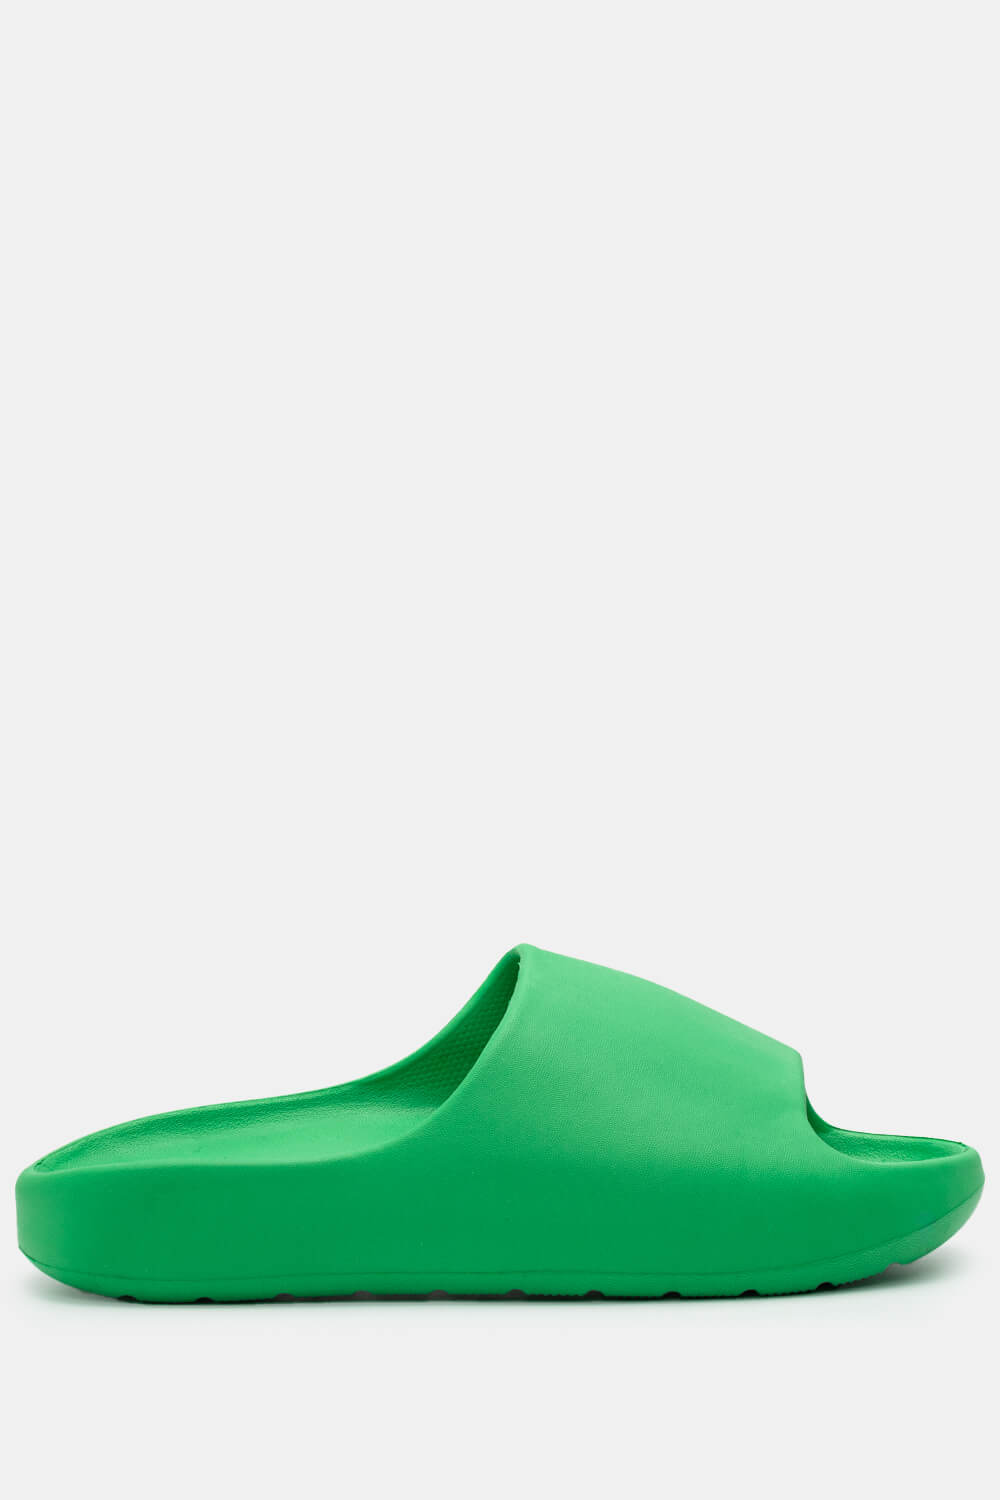 ΠΡΟΪΟΝΤΑ > ΠΑΠΟΥΤΣΙΑ > Jelly Shoes Παντόφλες Δίσολες Μονόχρωμες - Πράσινο